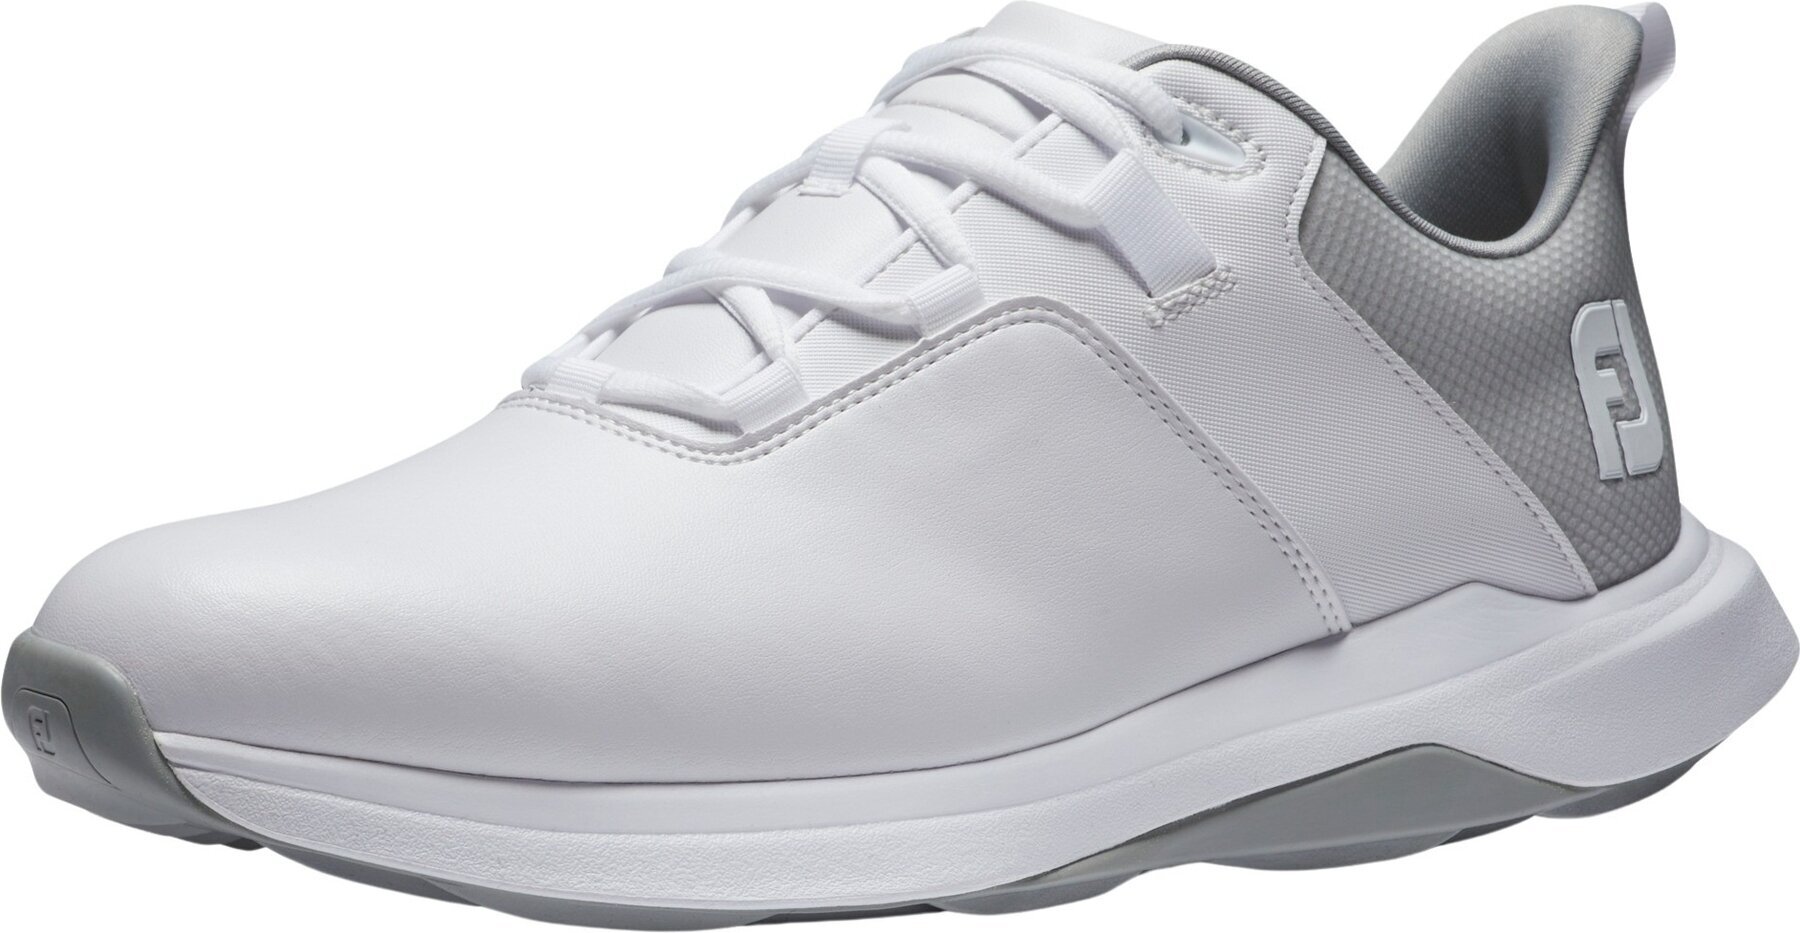 Chaussures de golf pour hommes Footjoy ProLite Mens Golf Shoes White/Grey 42,5